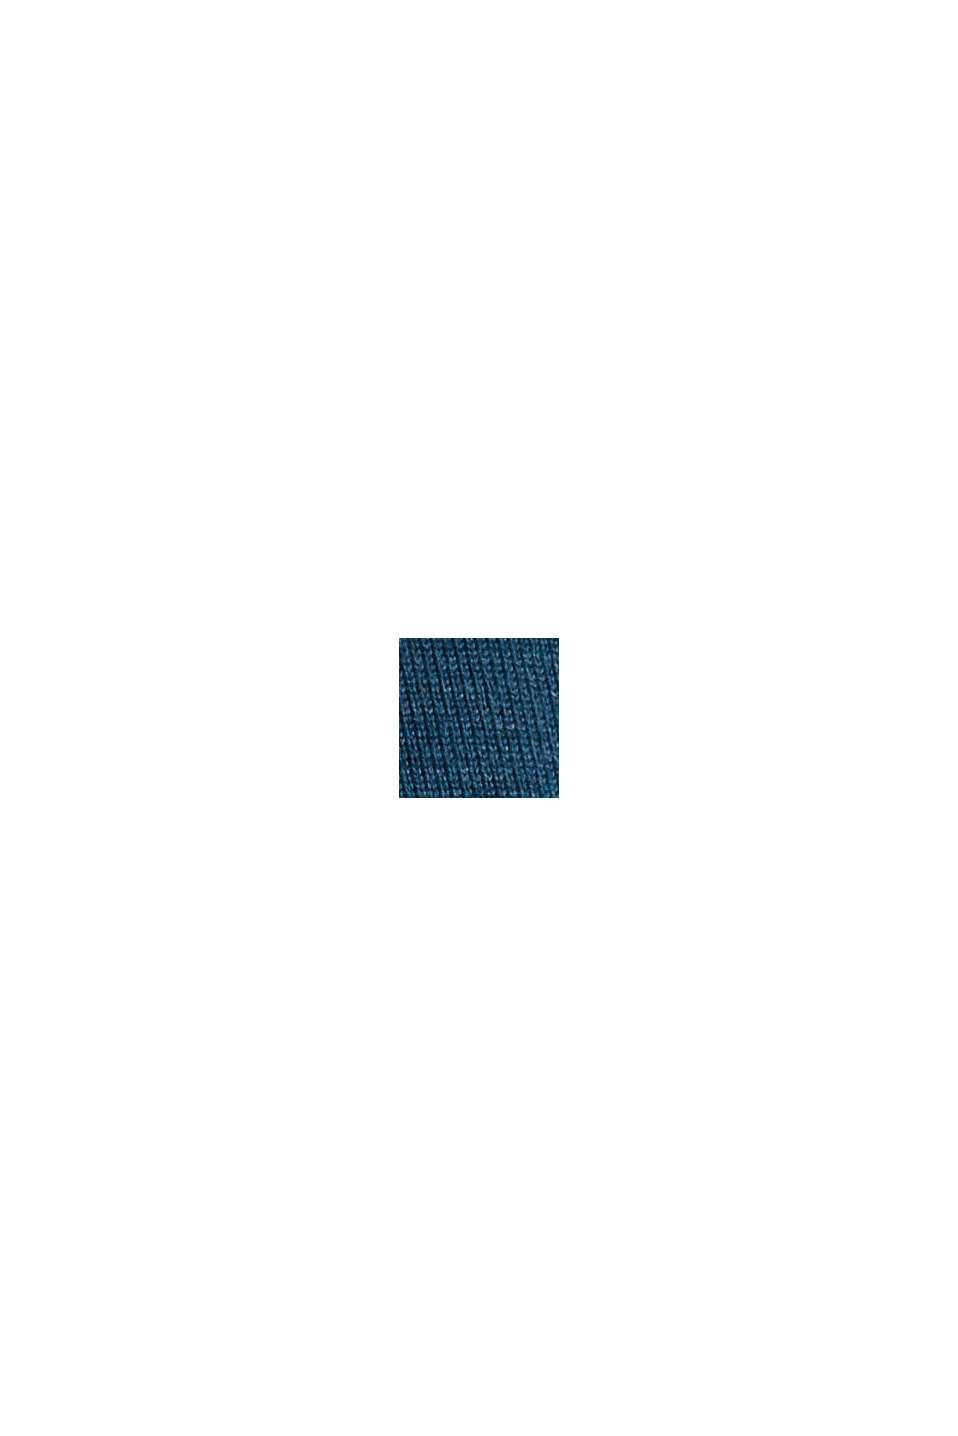 Pull-over à col roulé en coton biologique mélangé, PETROL BLUE, swatch